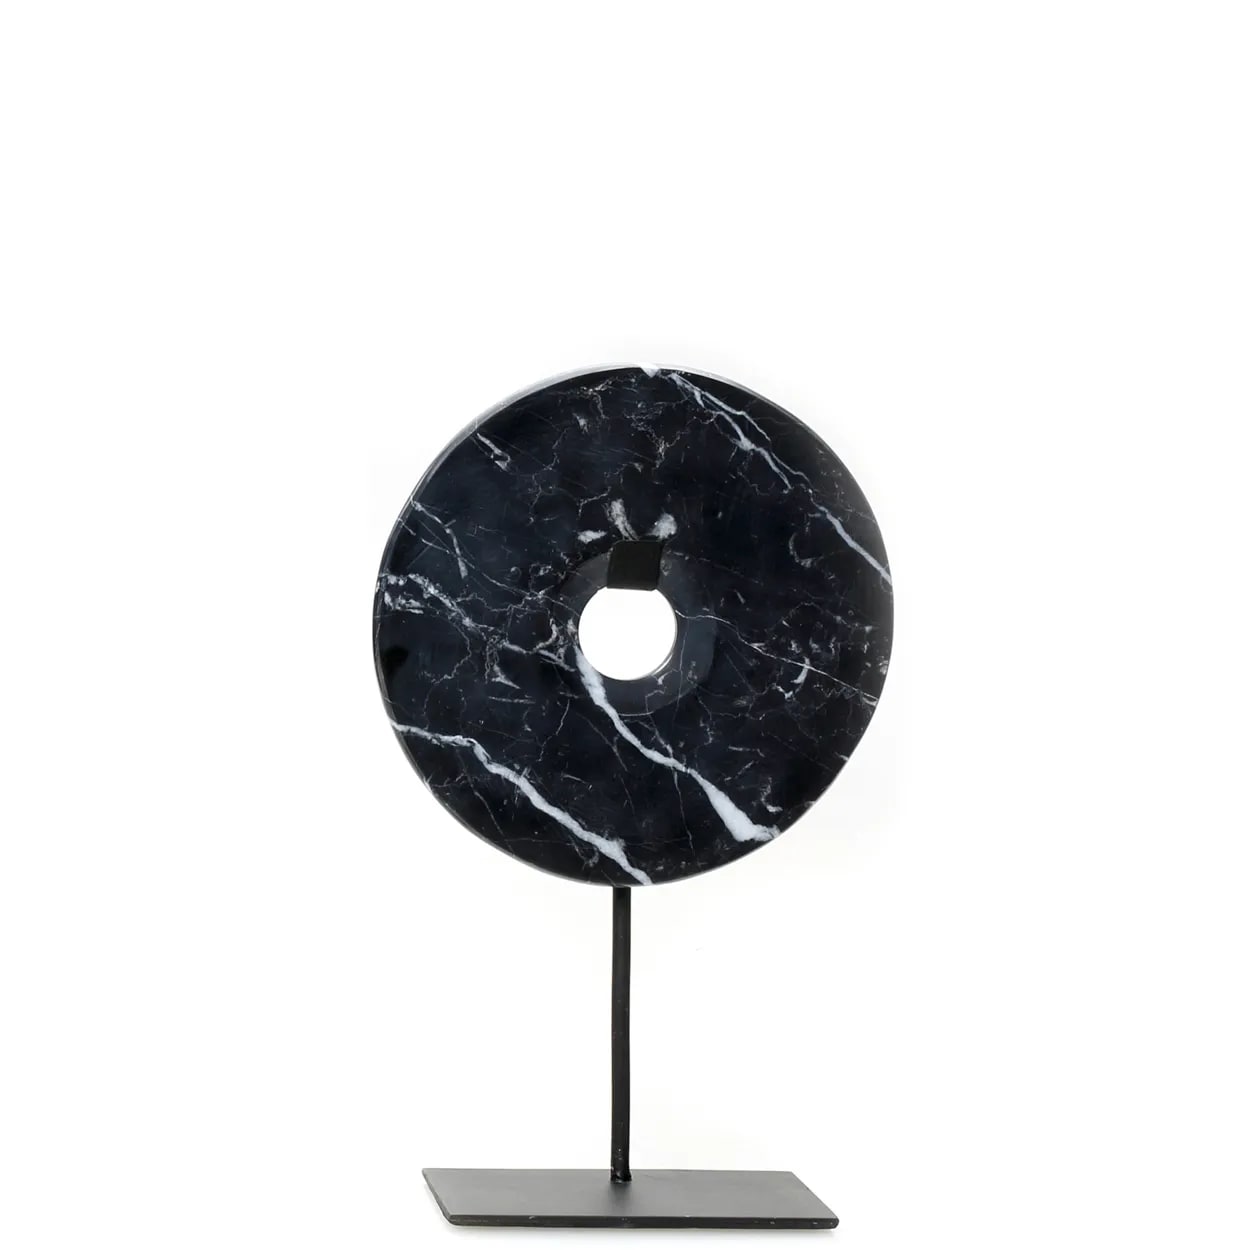 Statue en marbre noir sur une base en métal moyen